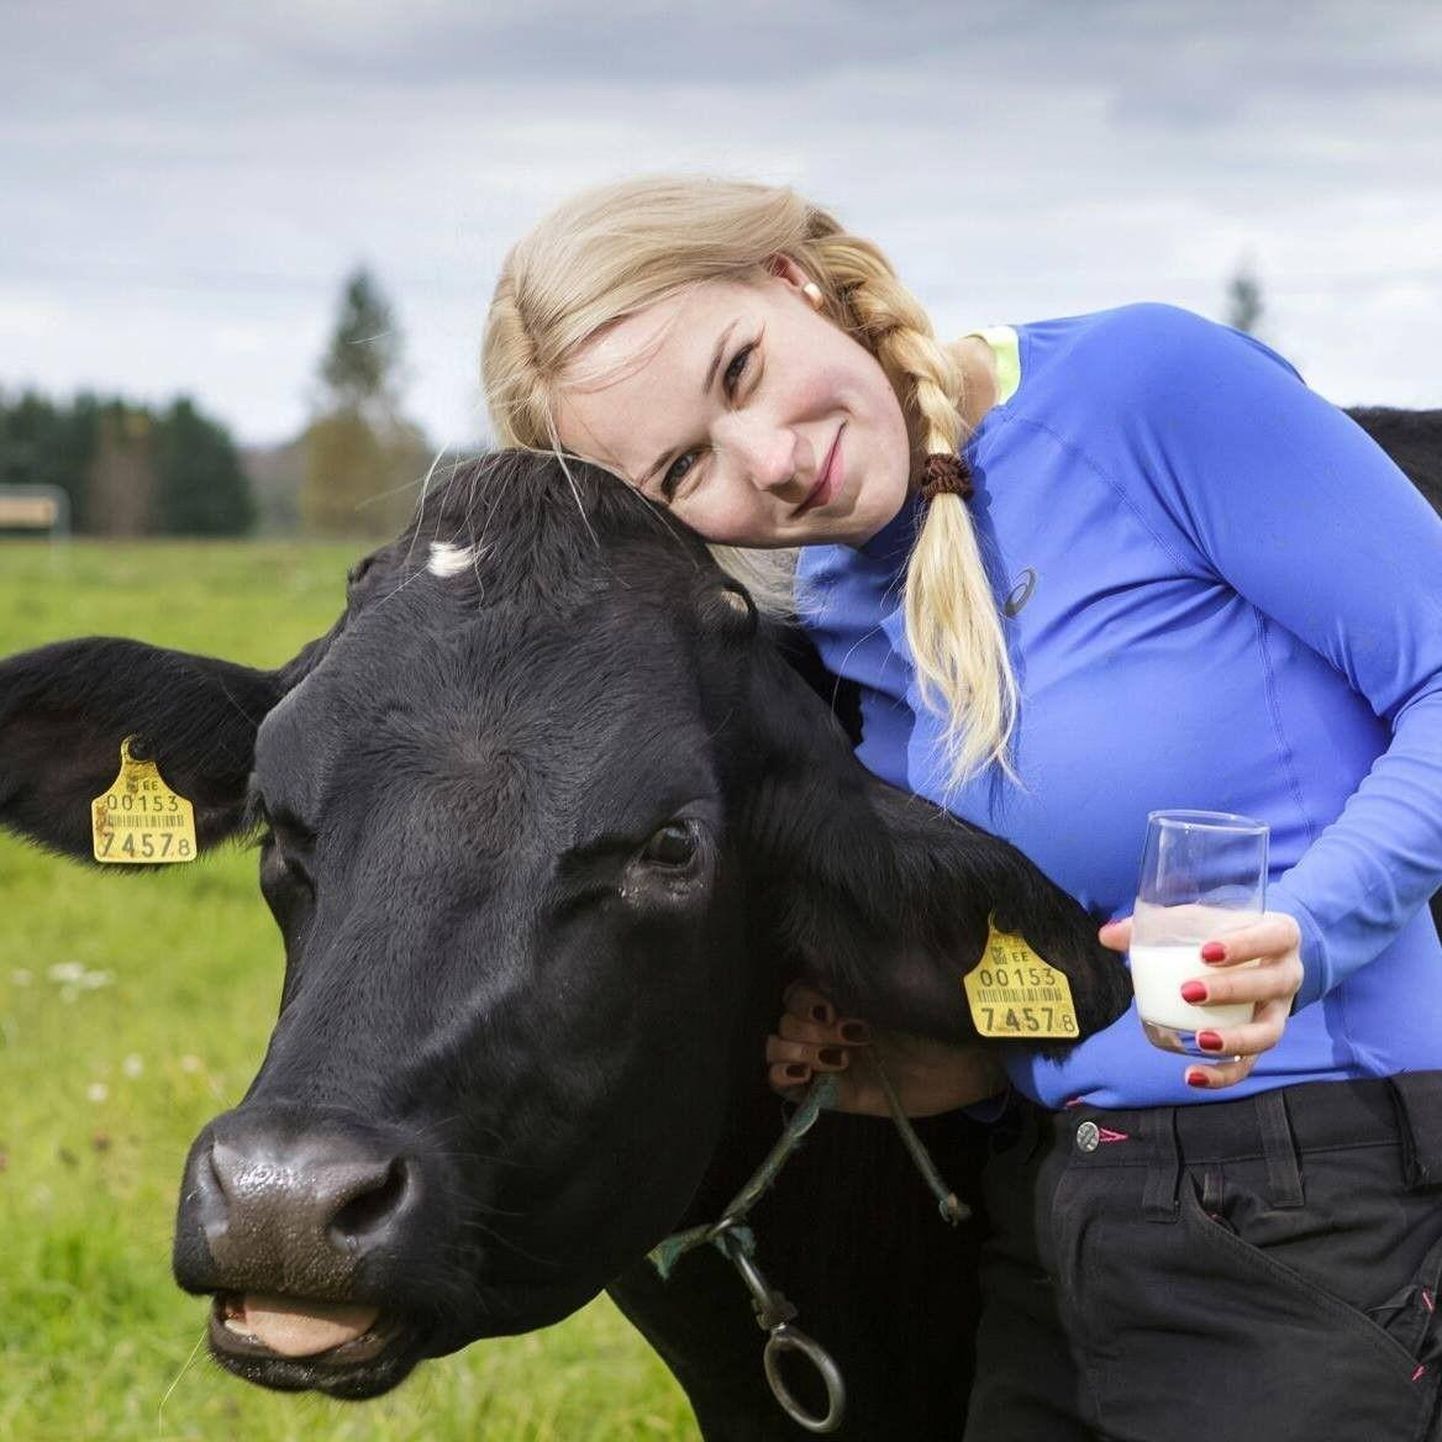 Eelmisel nädalal kuulutati välja Eesti aasta põllumees, esimese naisena selle konkursi ajaloos on see Kaja Piirfeldt.